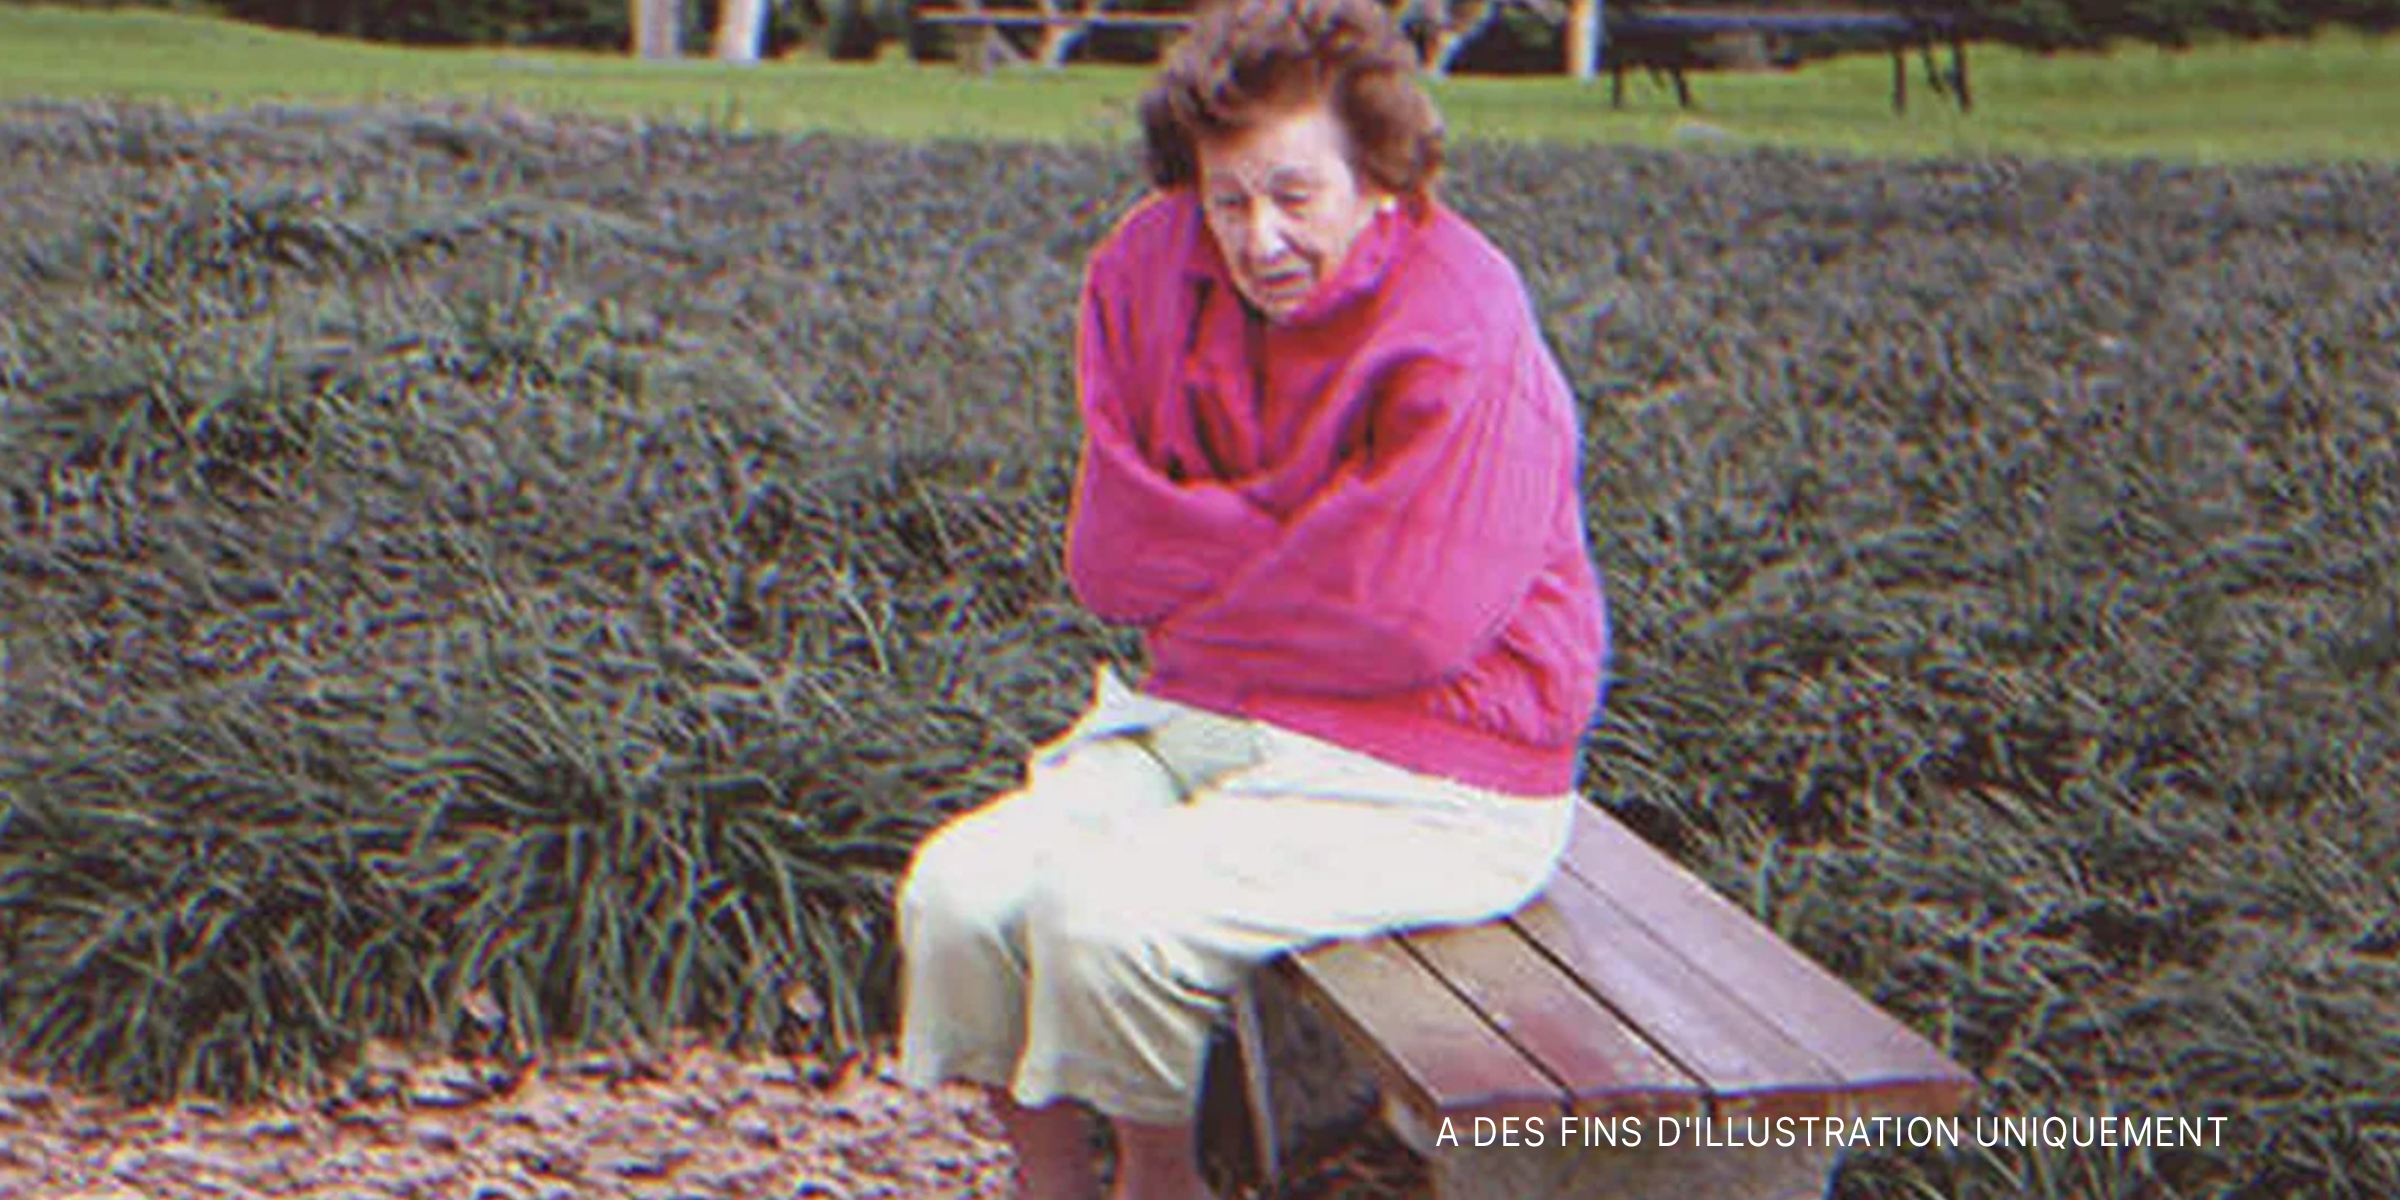 Une vieille dame assise sur un banc | Source : Shutterstock